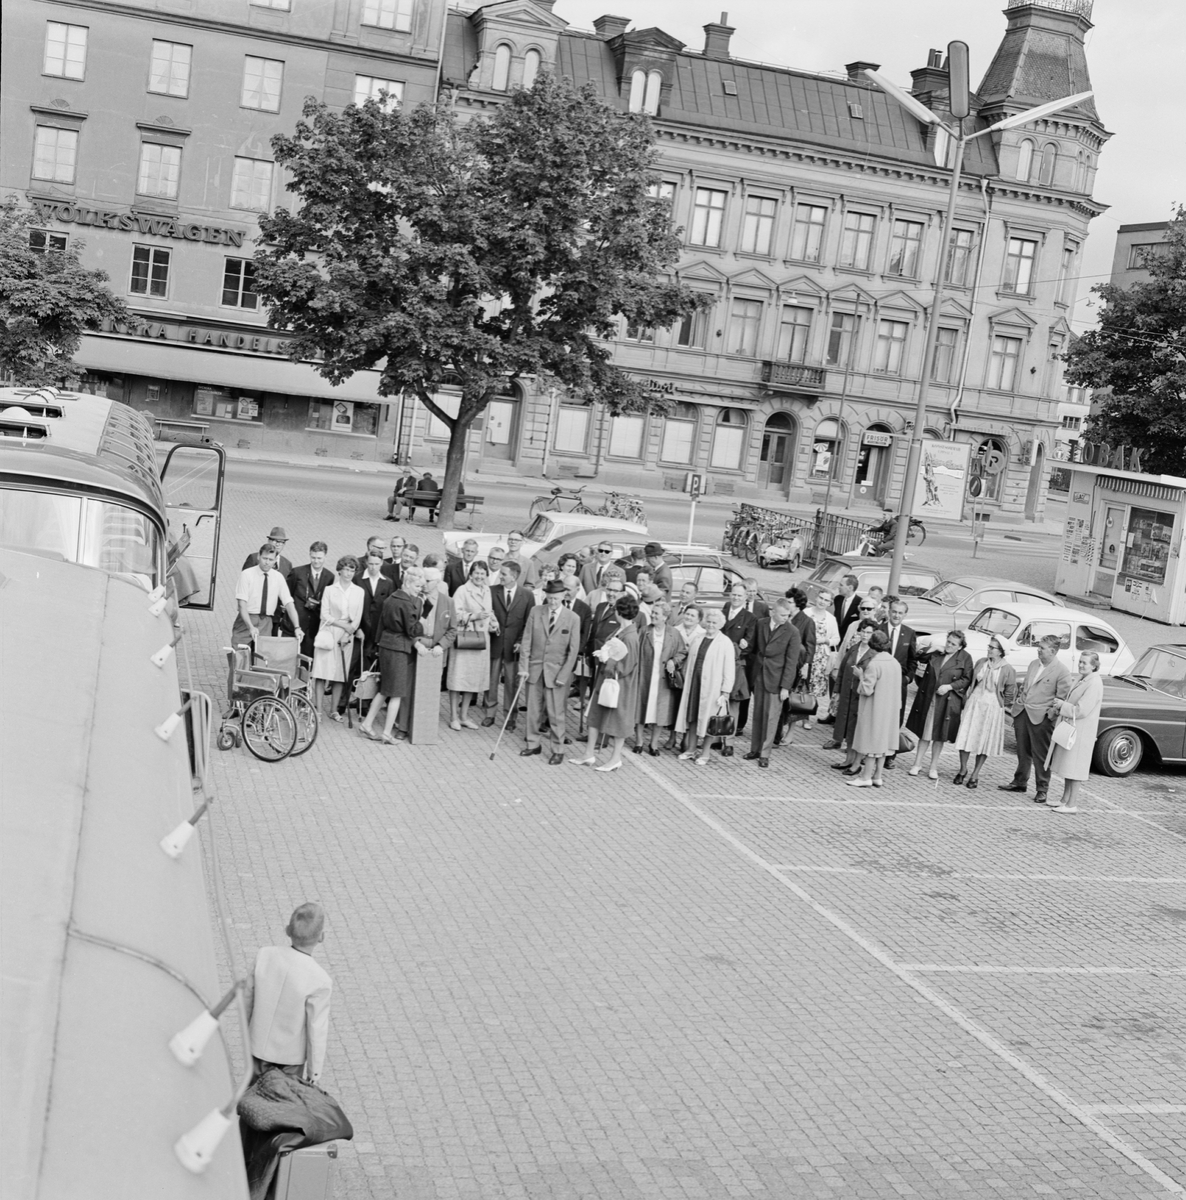 Utflykt till Furuvik - vid bussen på Vaksala torg, Uppsala juni 1965